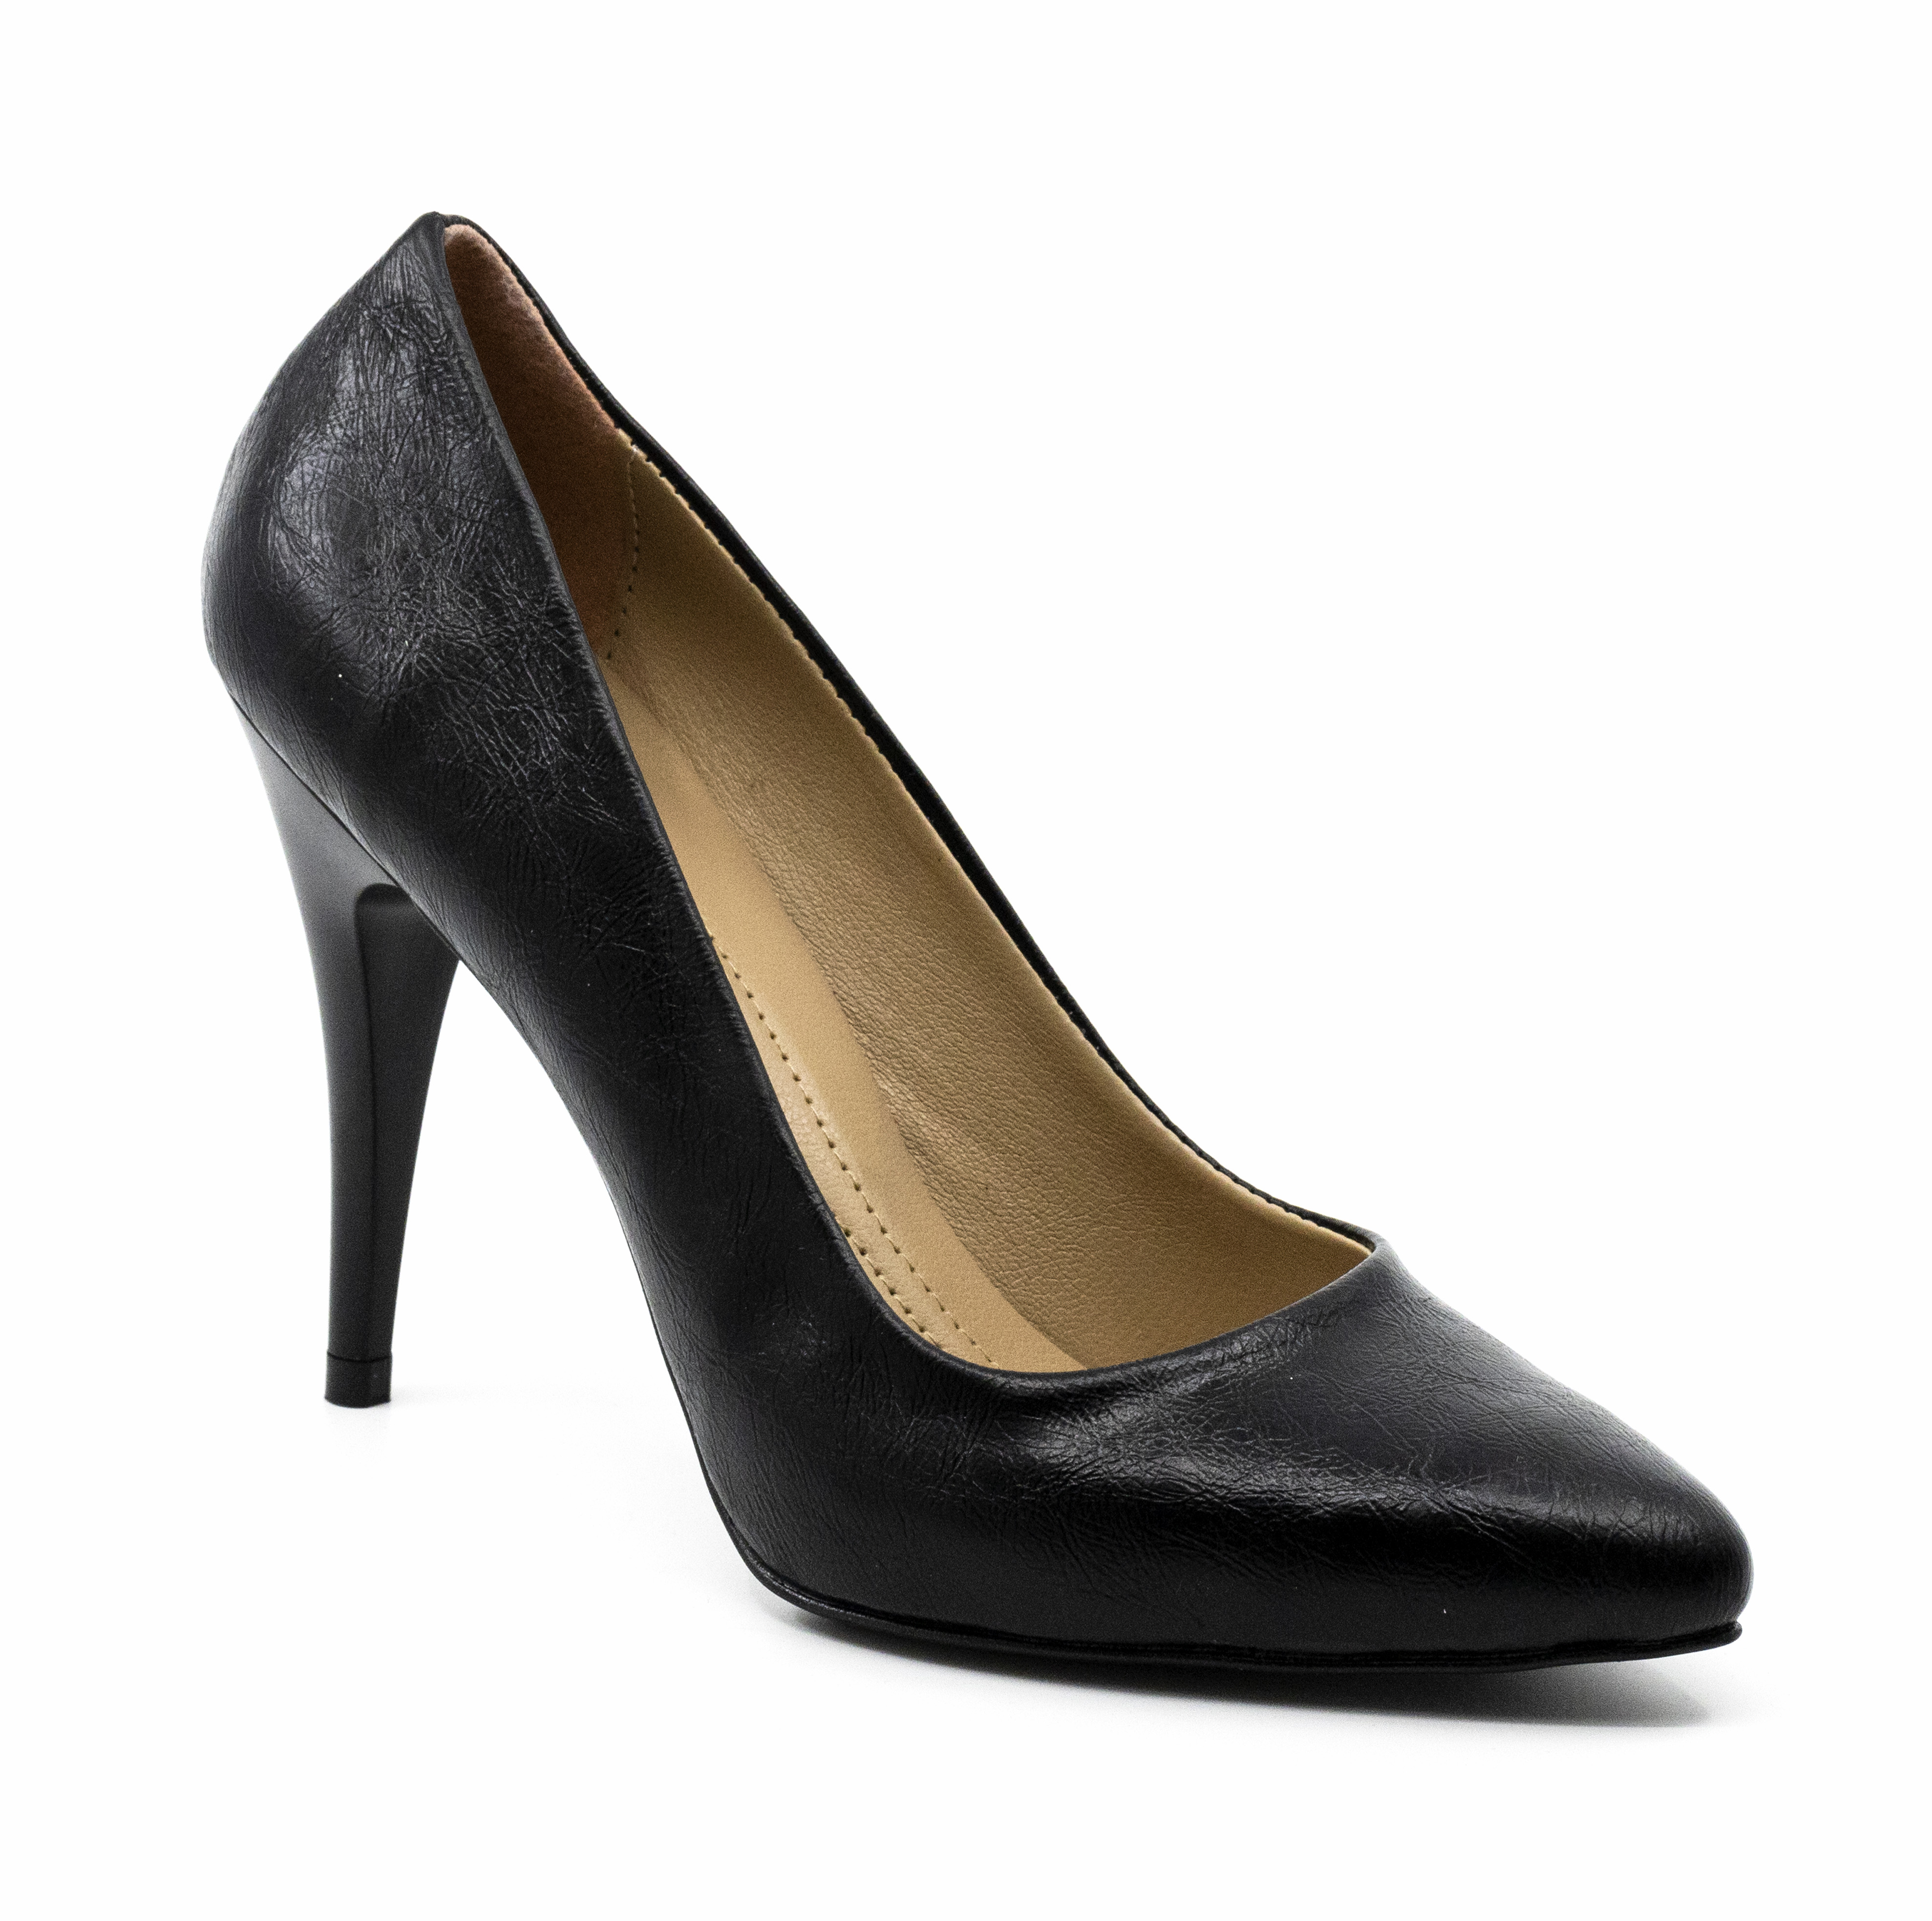 Kadın 10 cm İnce Topuklu Siyah Kırışık Deri Stiletto Ayakkabı, Renk: Rugan Siyah, Beden: 37